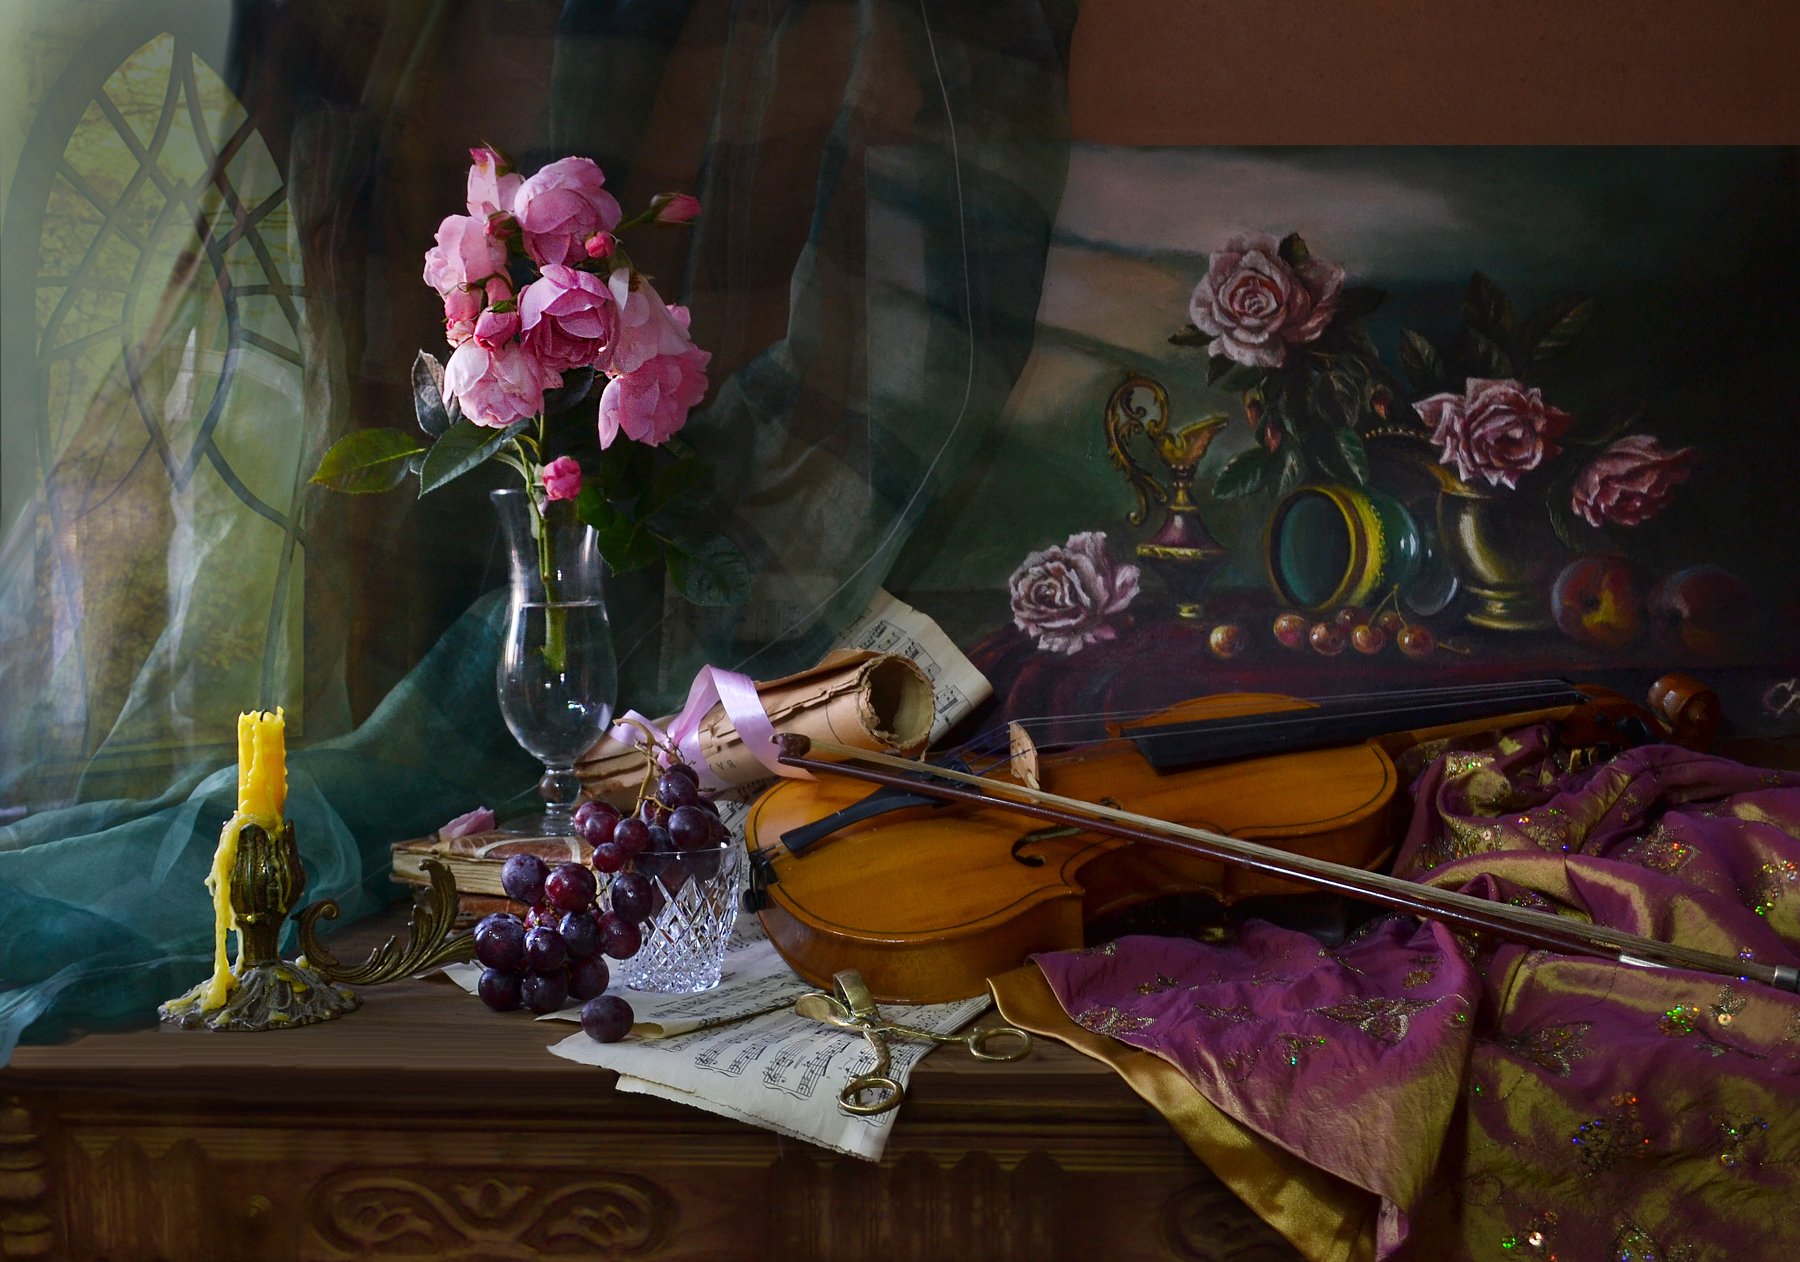 still life, натюрморт, фото натюрморт, осень, сентябрь,цветы,розы, скрипка, картина, свеча, подсвечник, ноты, виноград, Колова Валентина